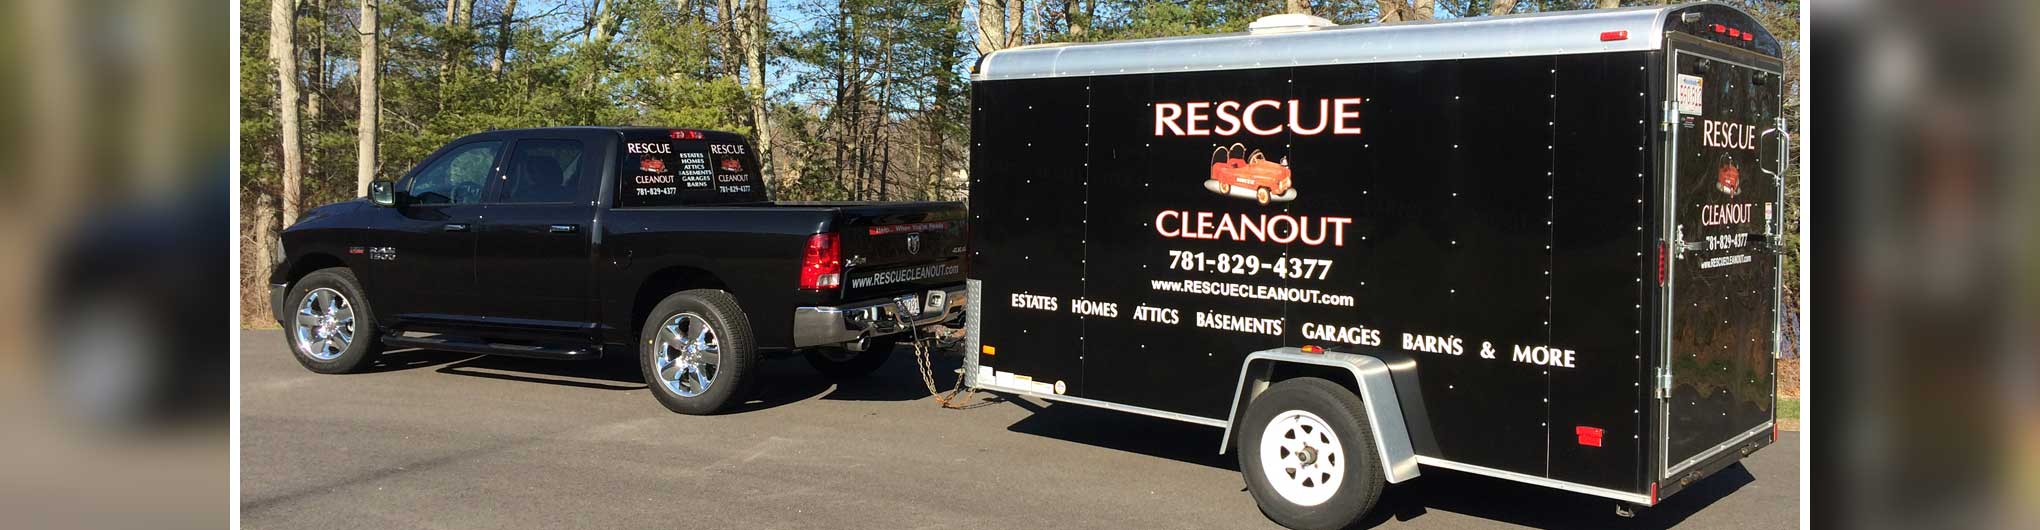 Rescue Cleanout Services